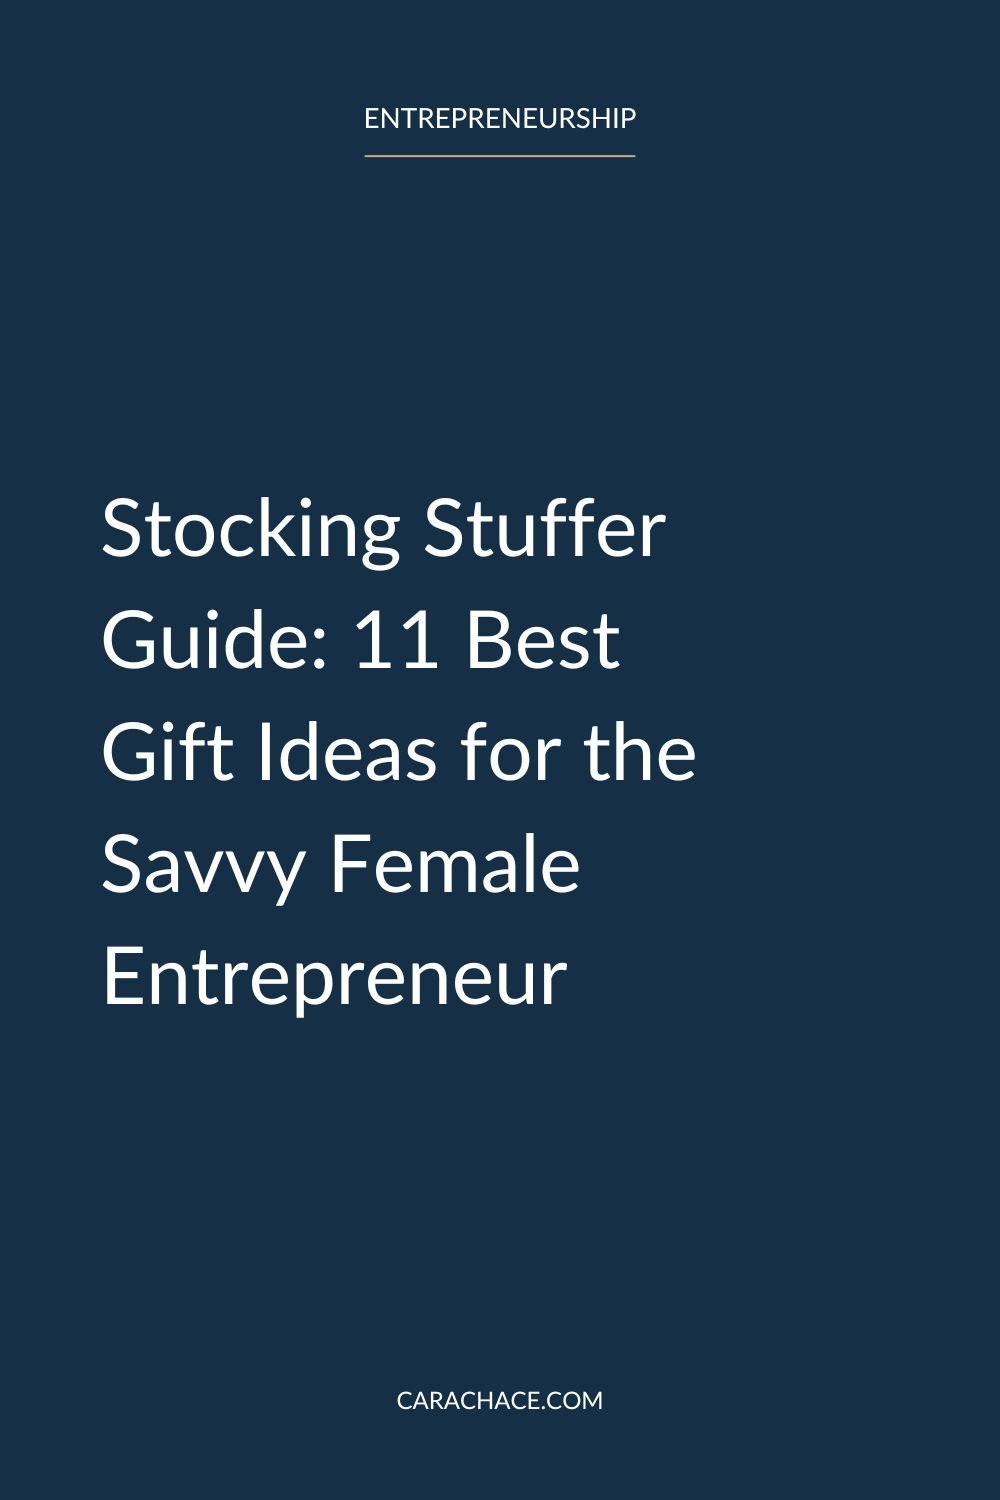 https://images.squarespace-cdn.com/content/v1/5fda69b70f003065f6b6fb47/c36a3549-ff2f-447e-a3d5-67de5efb72e7/Stocking+Stuffer+Guide+11+Best+Gift+Ideas+for+the+Savvy+Female+Entrepreneur+%281%29.jpg